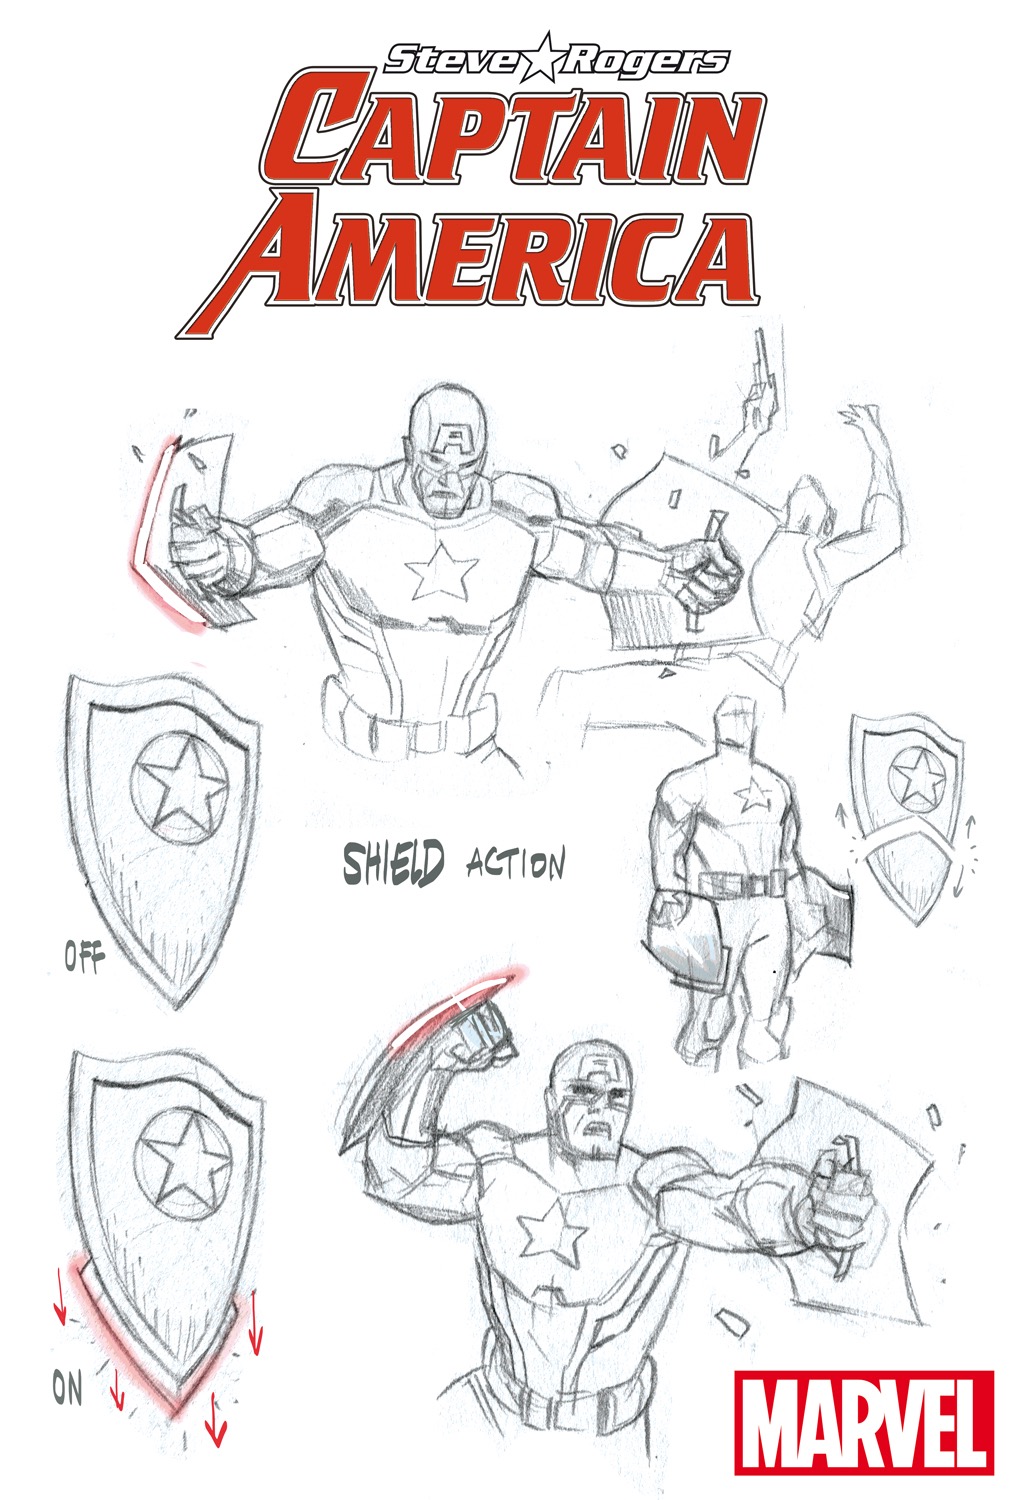 CaptainAmerica_SteveRogers-ShieldAction.jpg